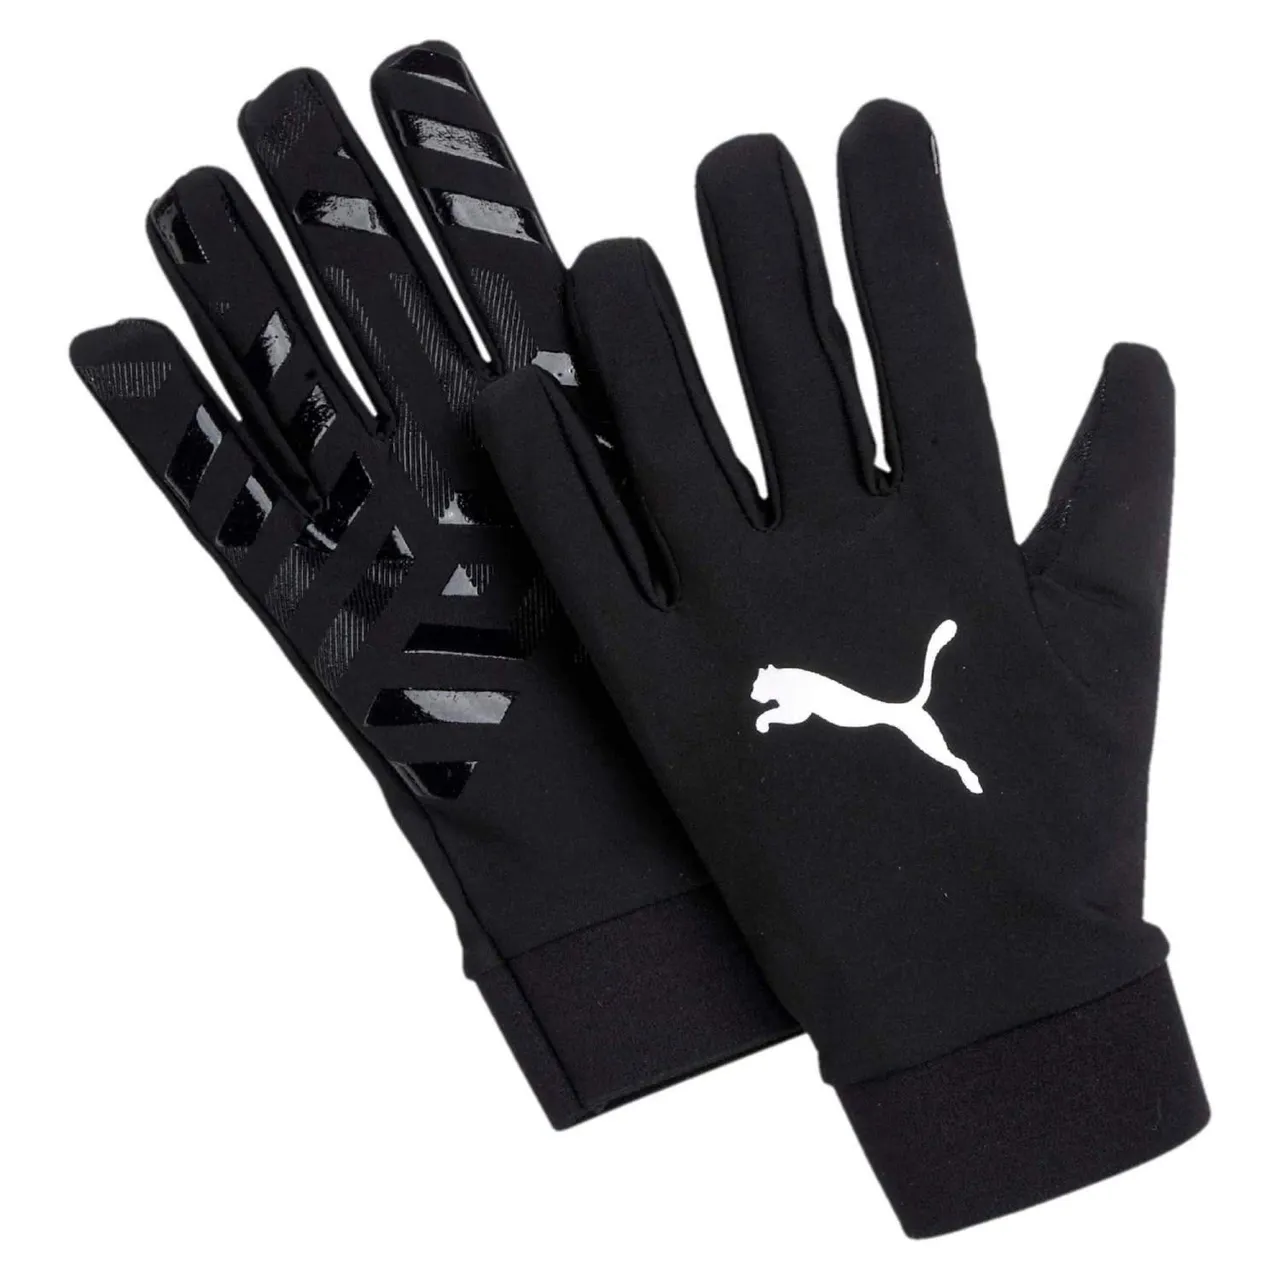 Puma Unisex's Field Player Glove